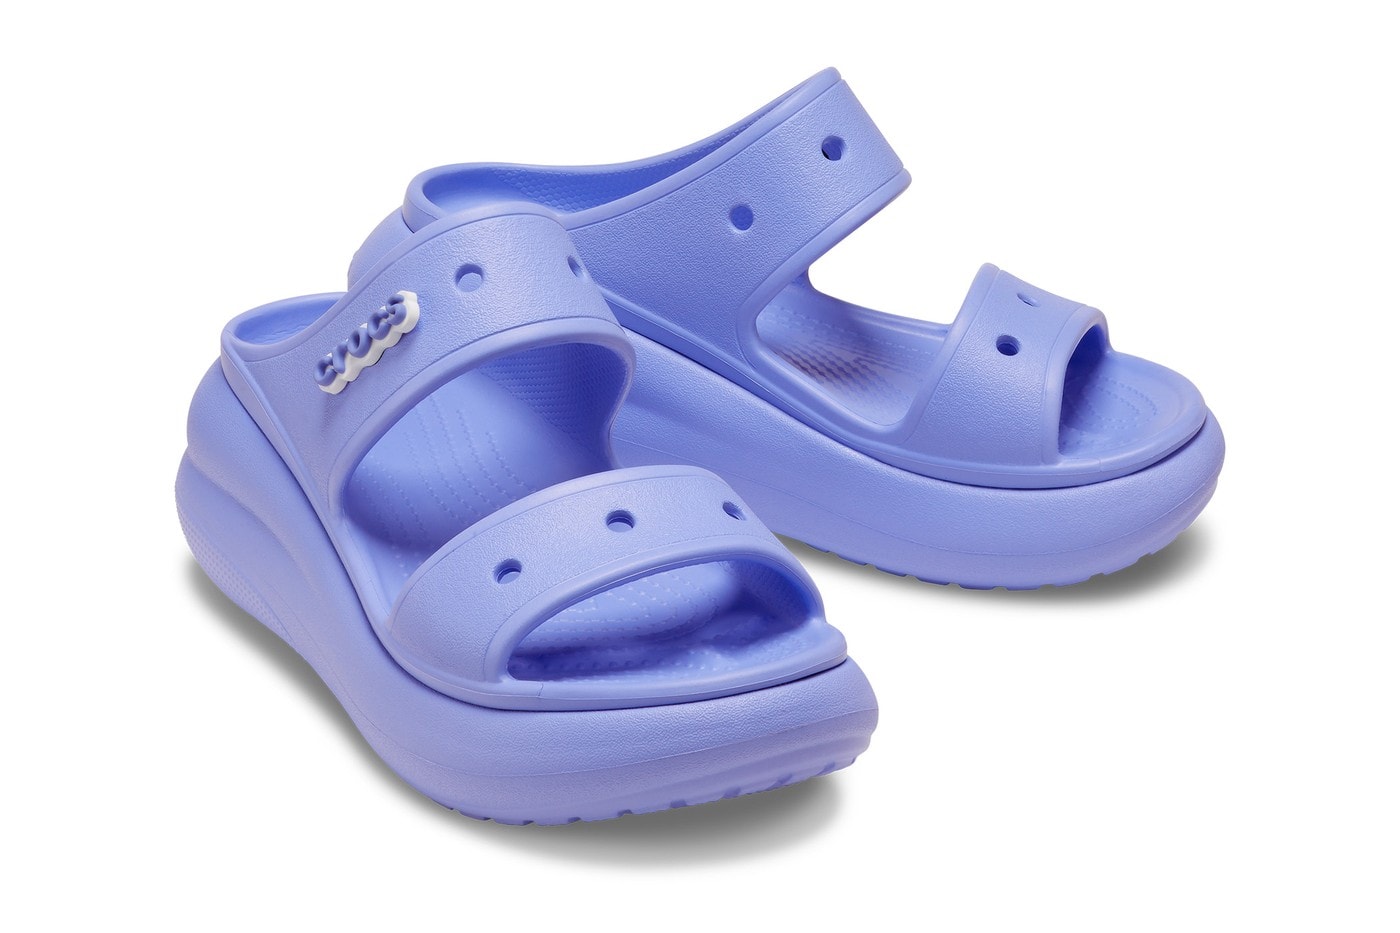 Crocs 正式推出最新厚底涼鞋「Crush」